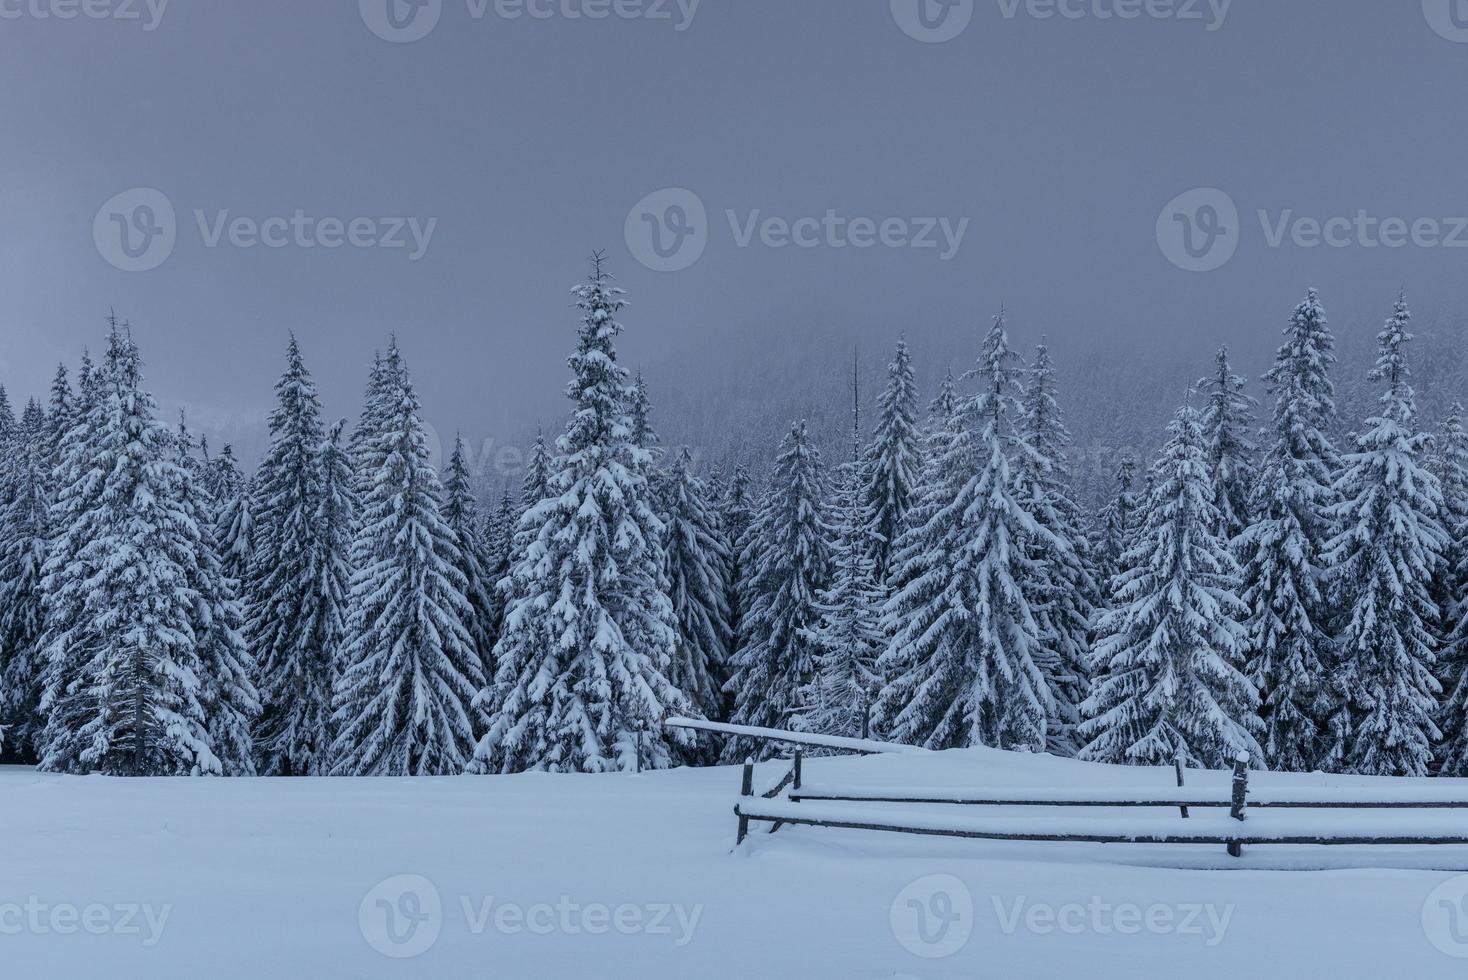 maestoso paesaggio invernale, pineta con alberi coperti di neve. una scena drammatica con basse nuvole nere, una calma prima della tempesta foto